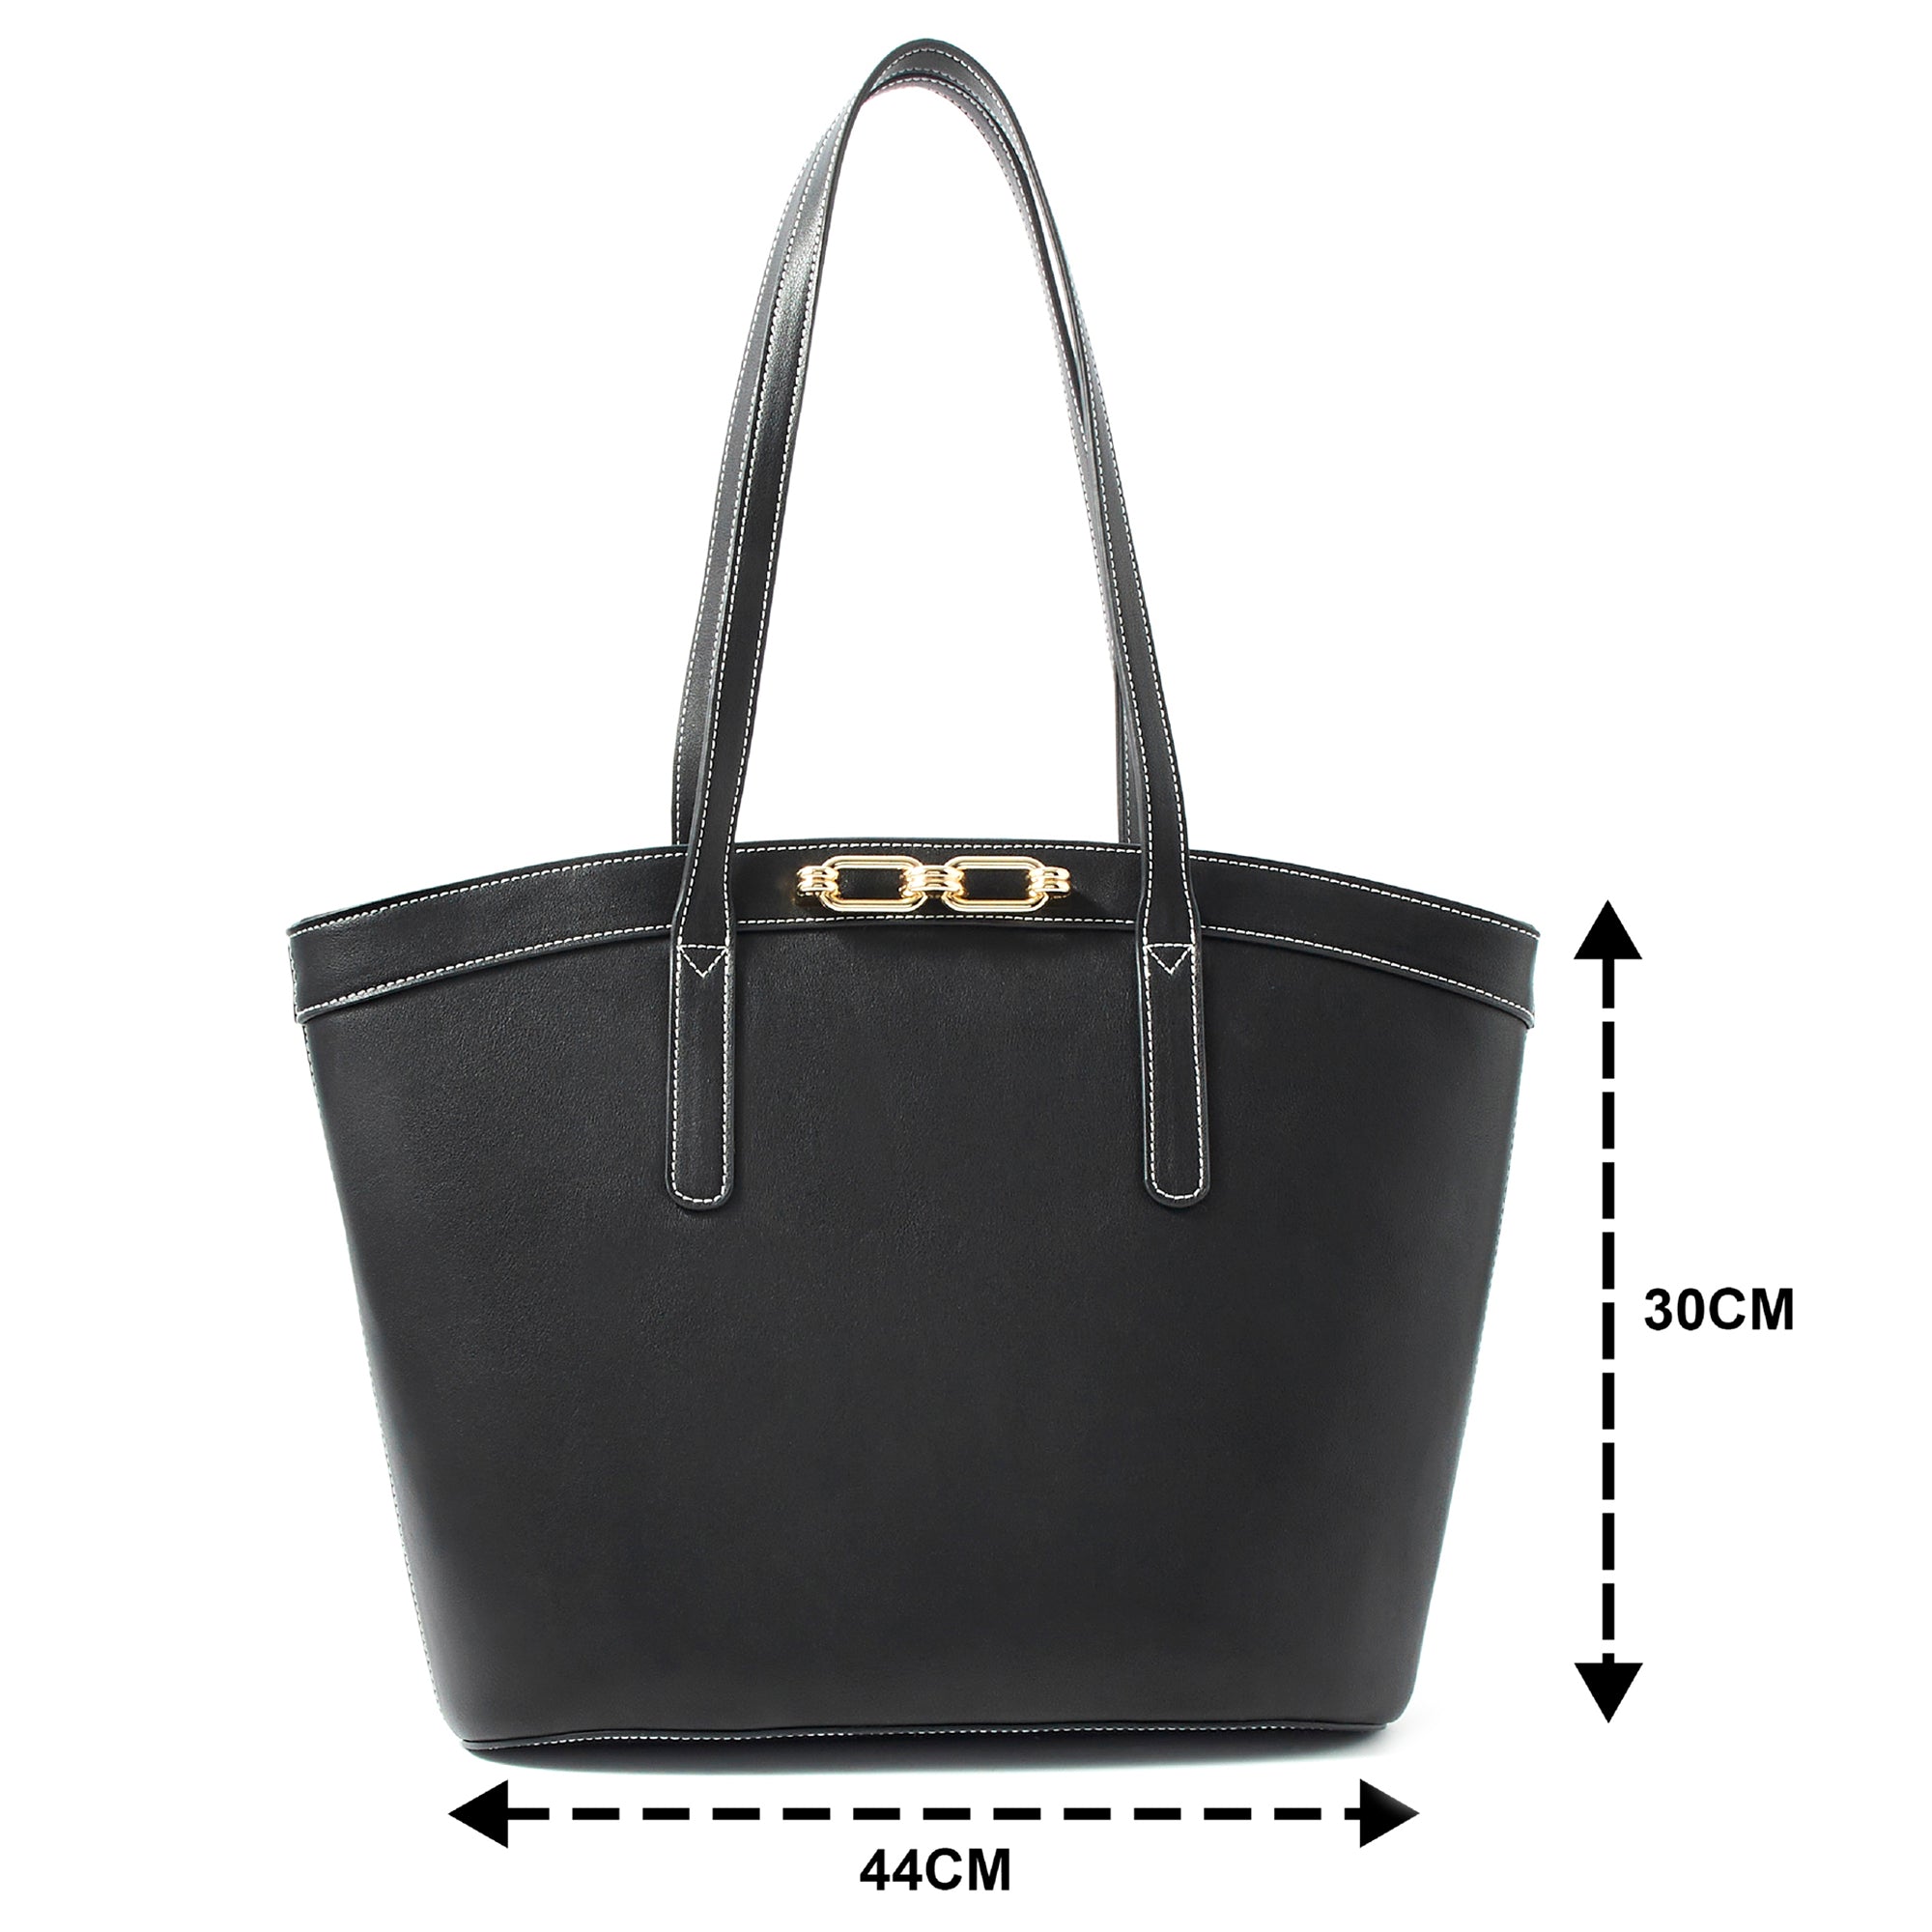 Accessorize London women's Faux Leather Danielle Detail Black Tote Bag